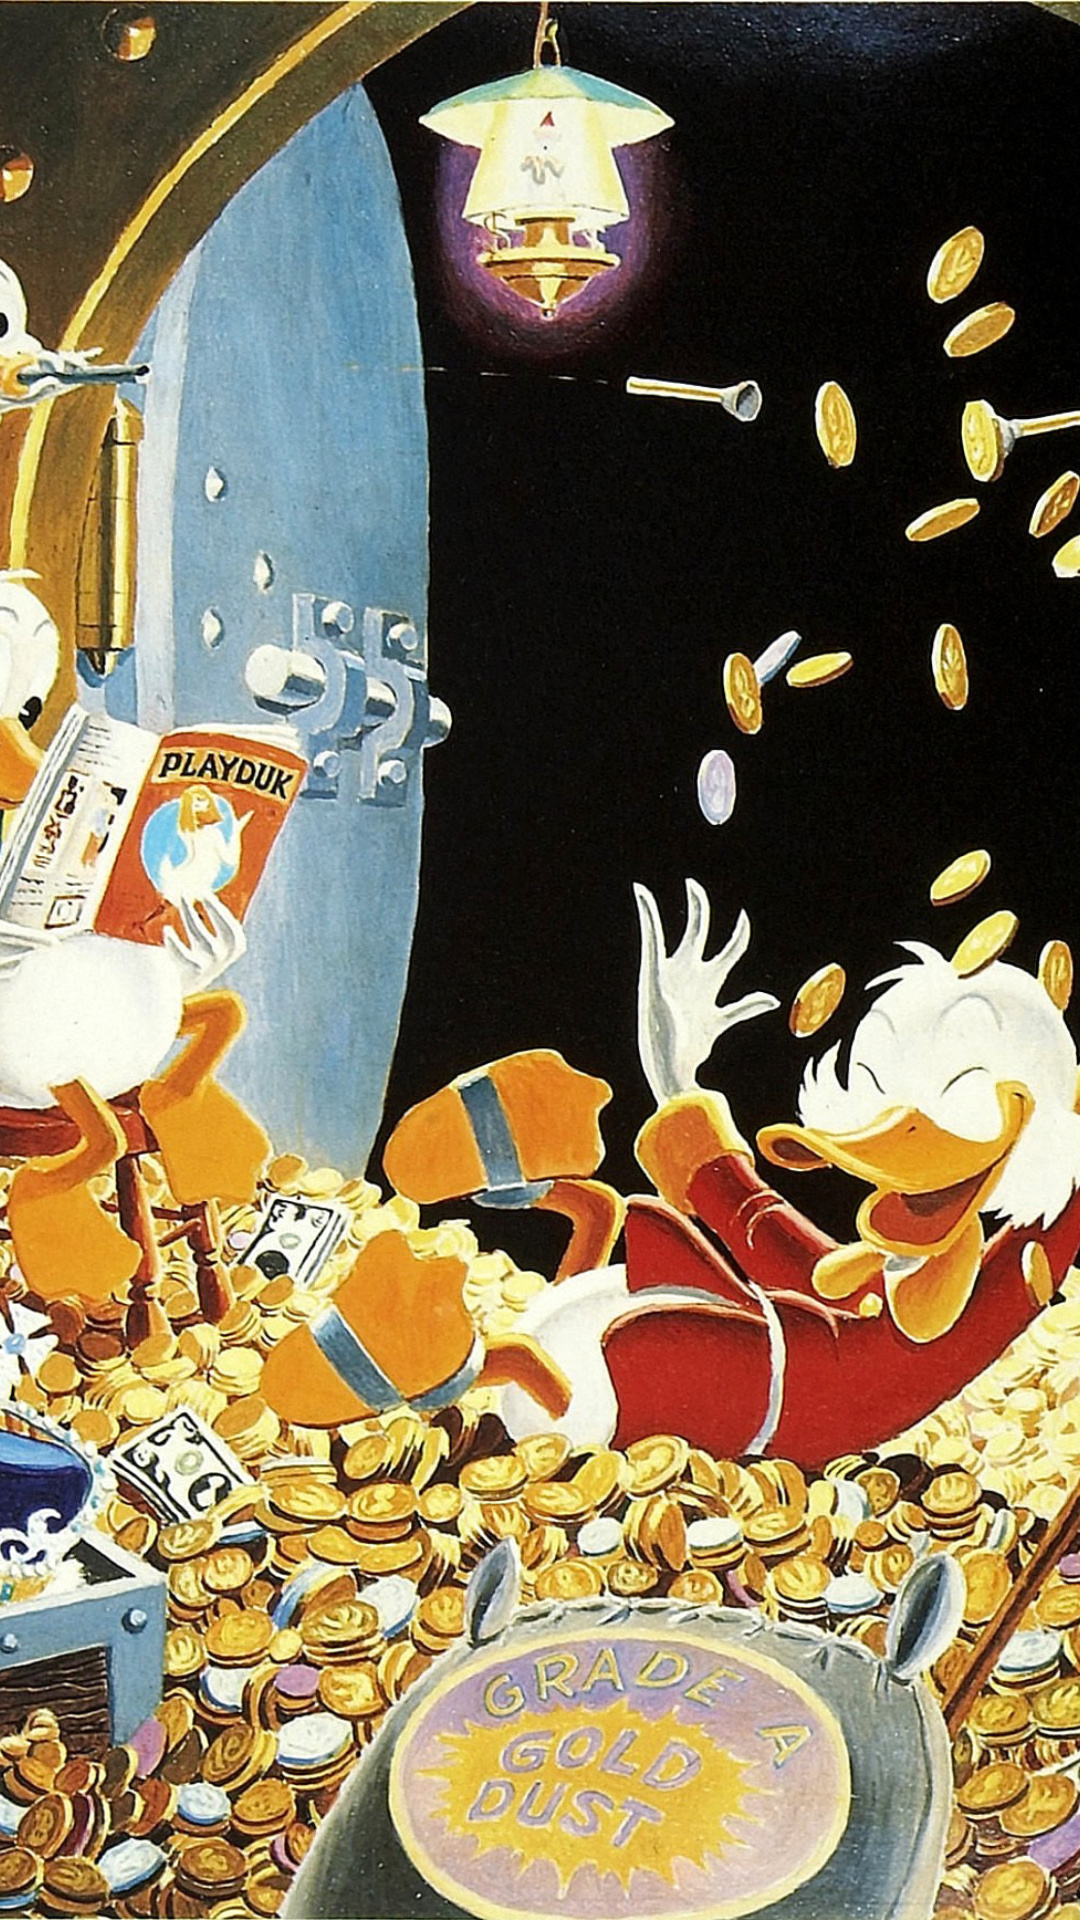 DuckTales and Scrooge McDuck Money wallpaper 1080x1920